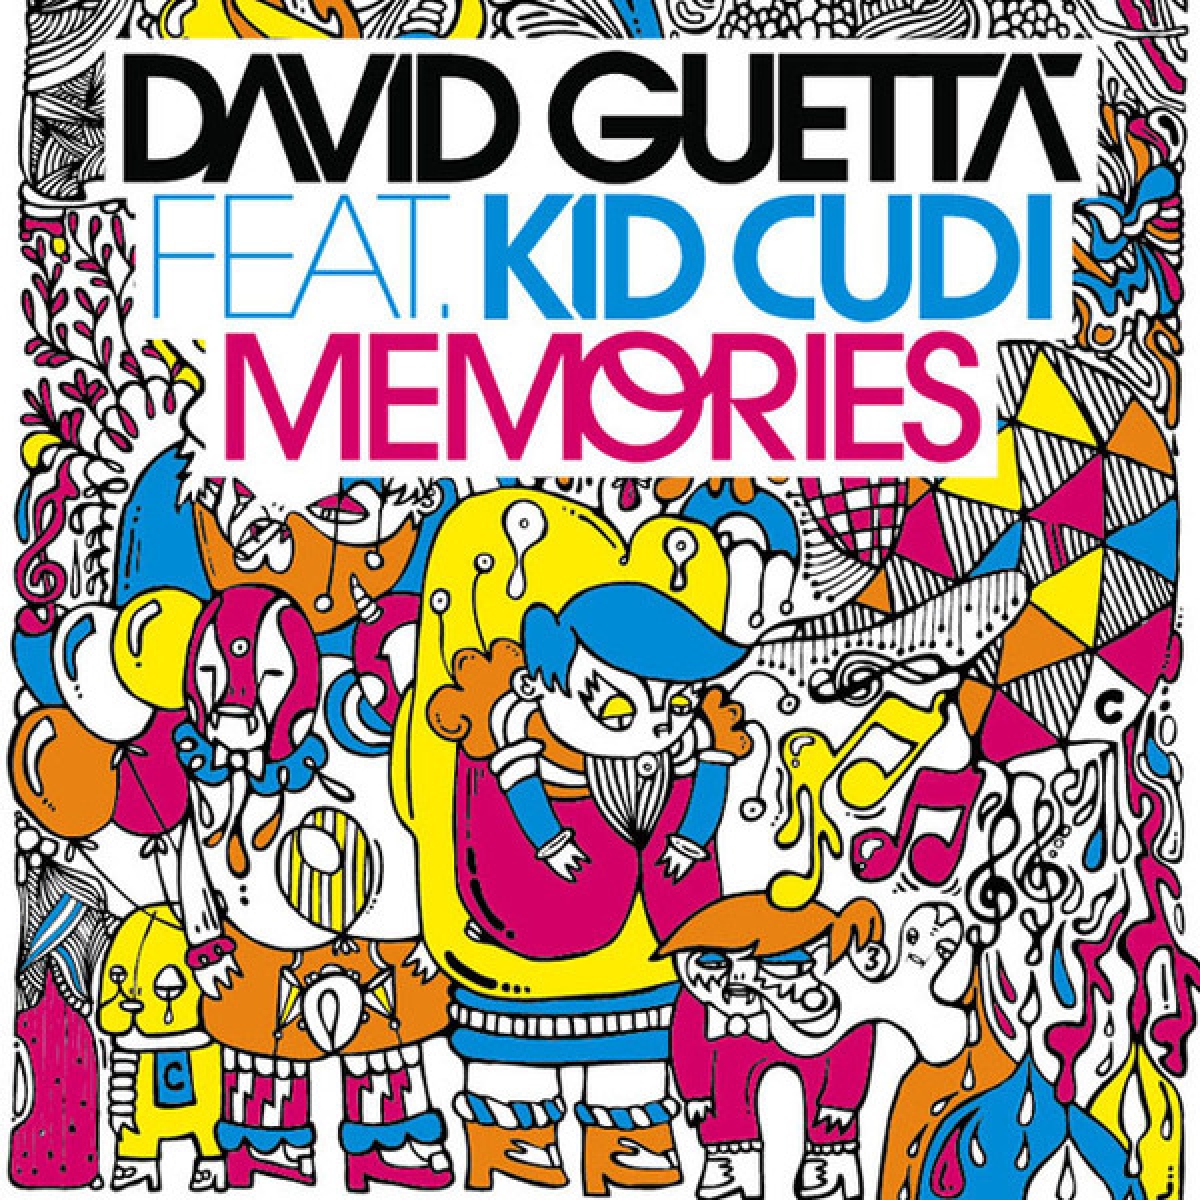 DAVID GUETTA - Memories